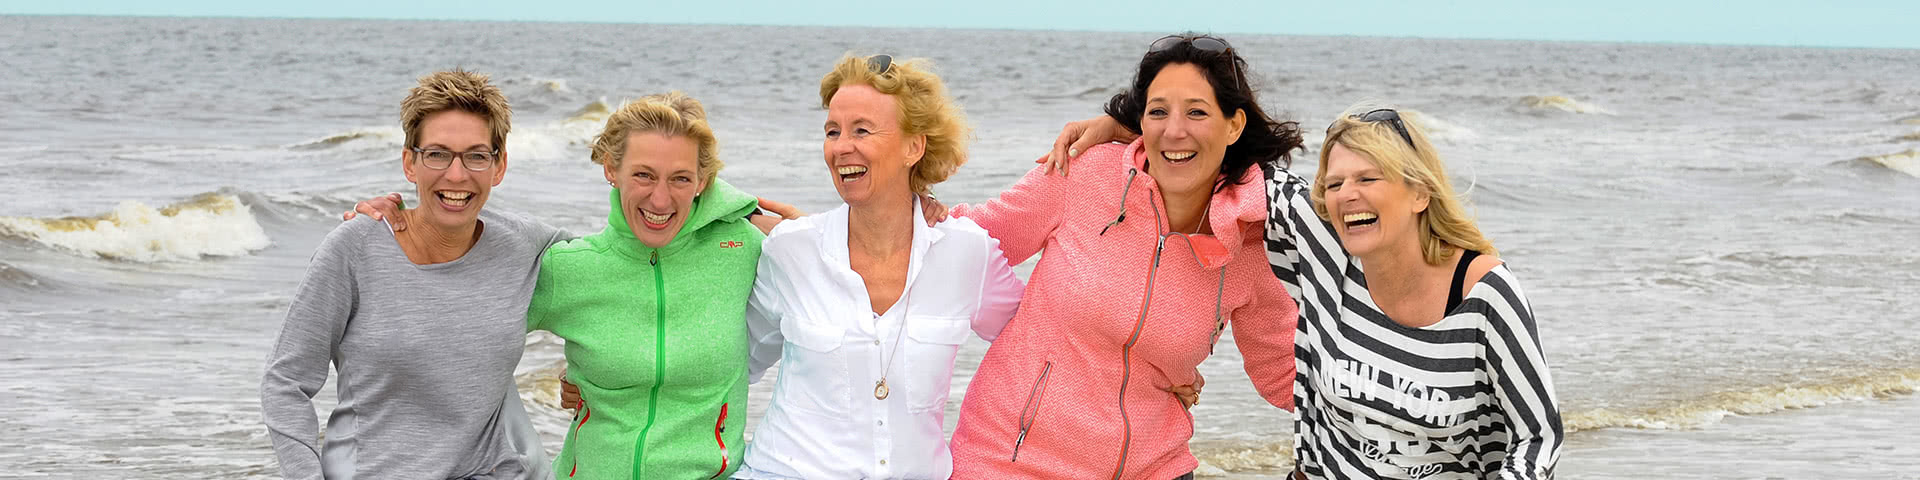 Gut gelaunte Frauengruppe steht am Meer auf Norderney